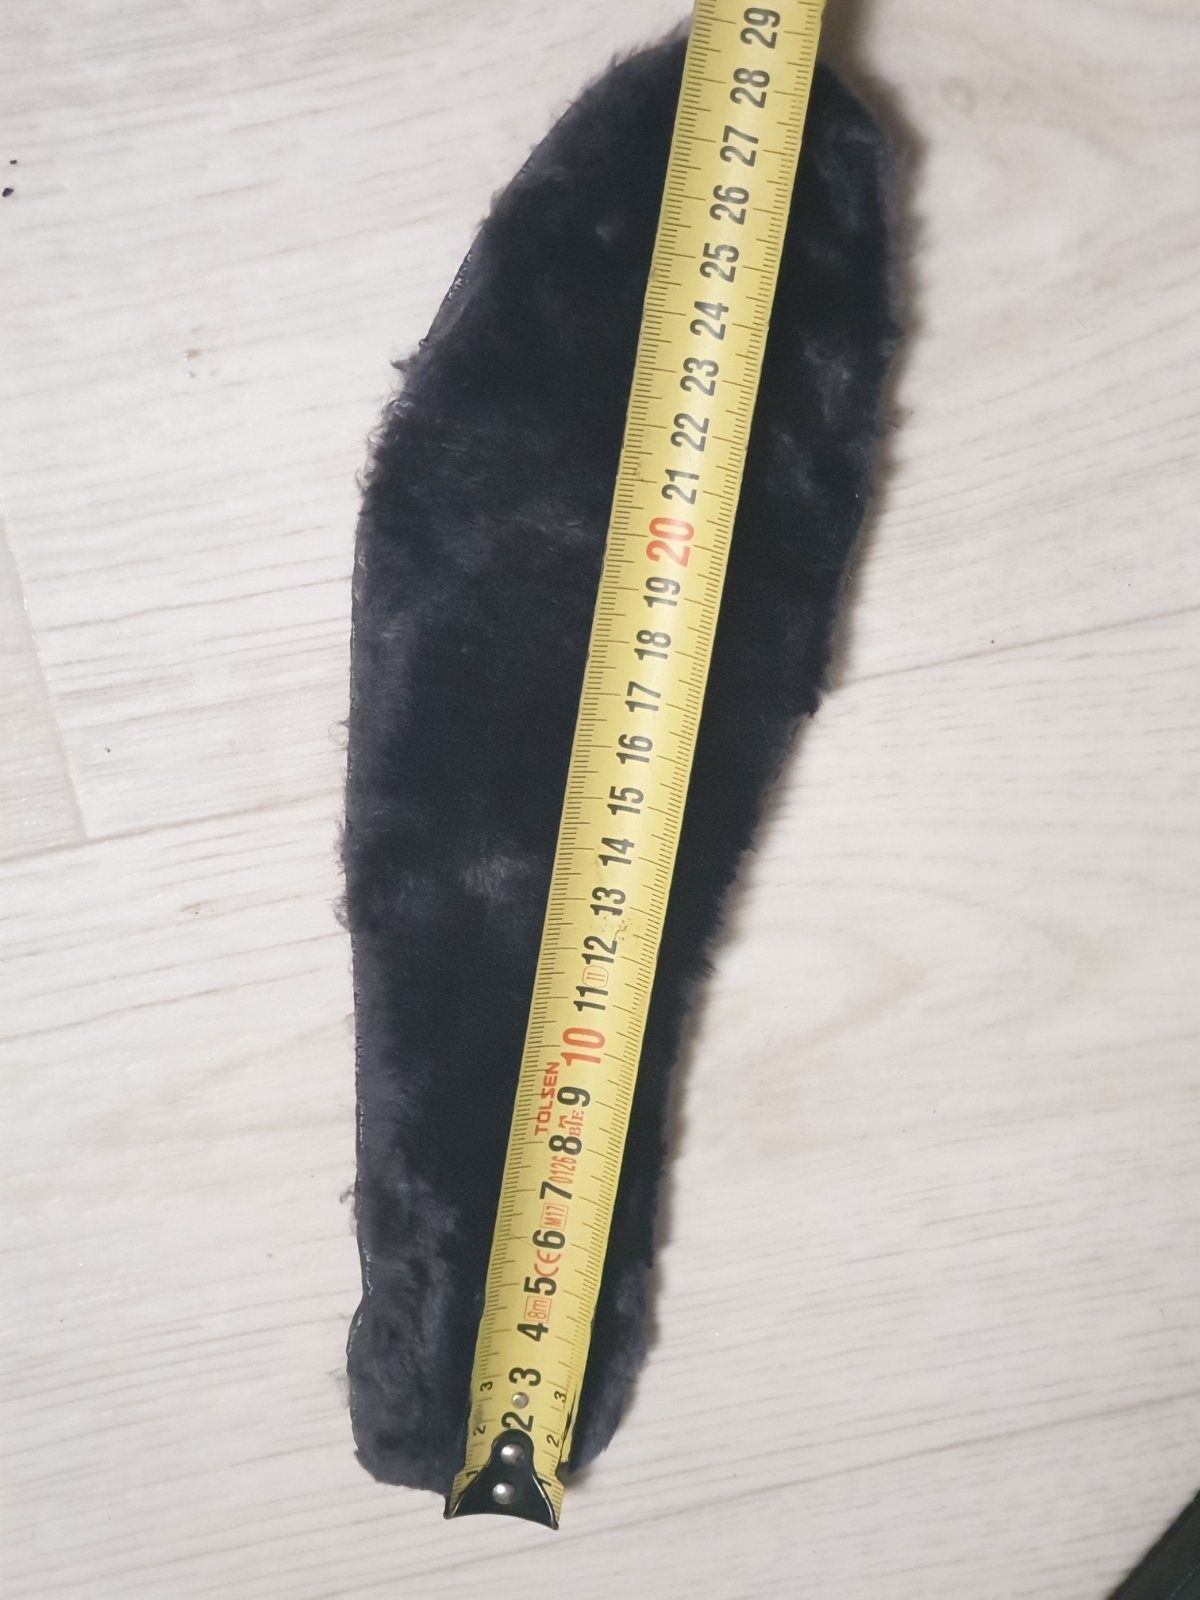 46 размер Новые зимние мужские ботинки стелька 29.5 см. 45 - 46 размер